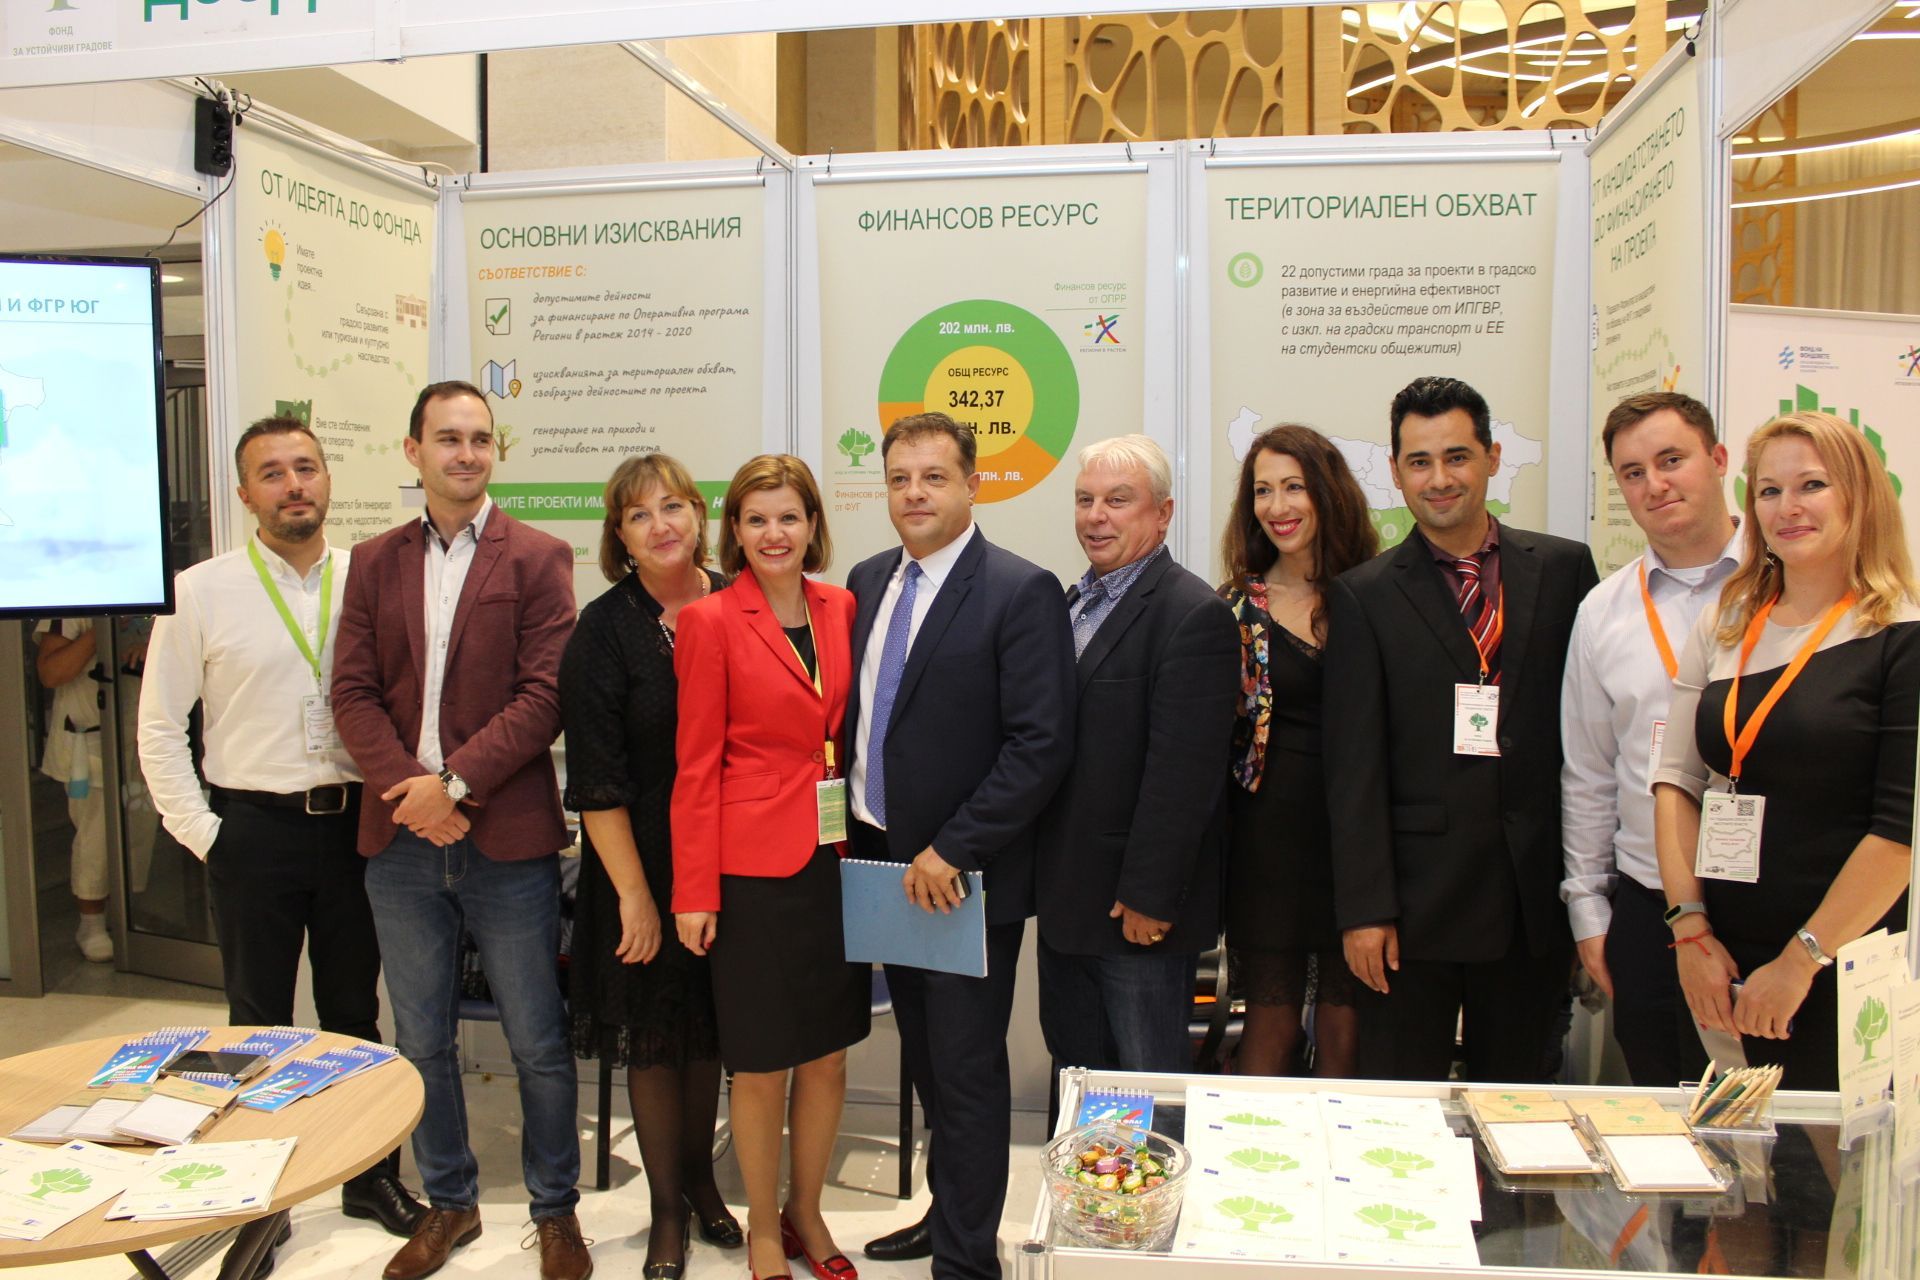 Фонд за устойчиви градове участва в ХІІІ Годишна среща на местните власти, организирана от Националното сдружение на общините в Република България